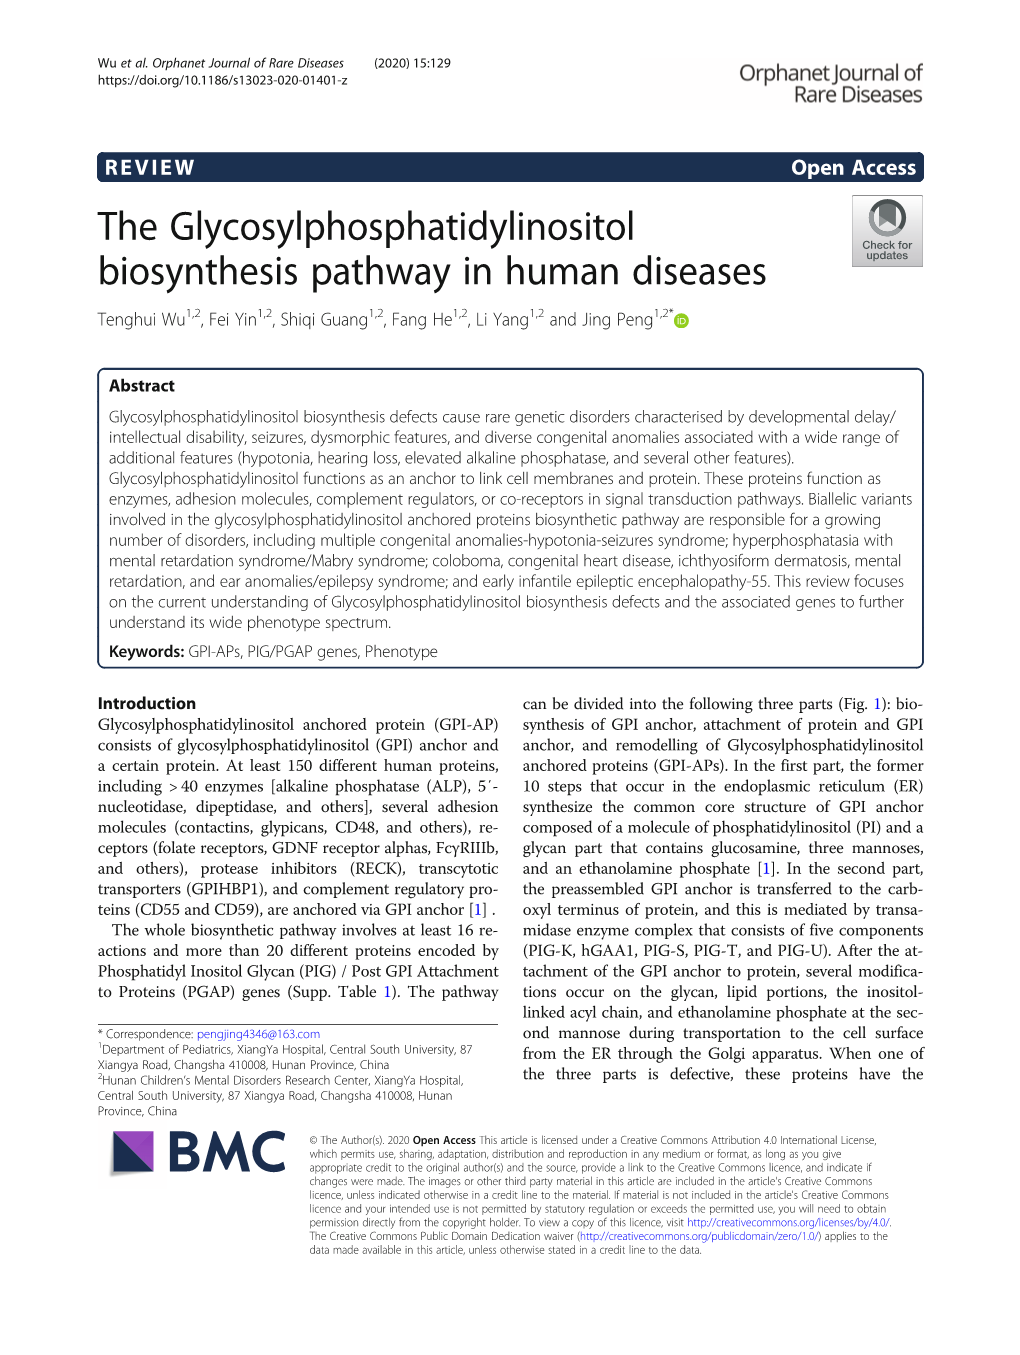 The Glycosylphosphatidylinositol Biosynthesis Pathway in Human Diseases Tenghui Wu1,2, Fei Yin1,2, Shiqi Guang1,2, Fang He1,2, Li Yang1,2 and Jing Peng1,2*